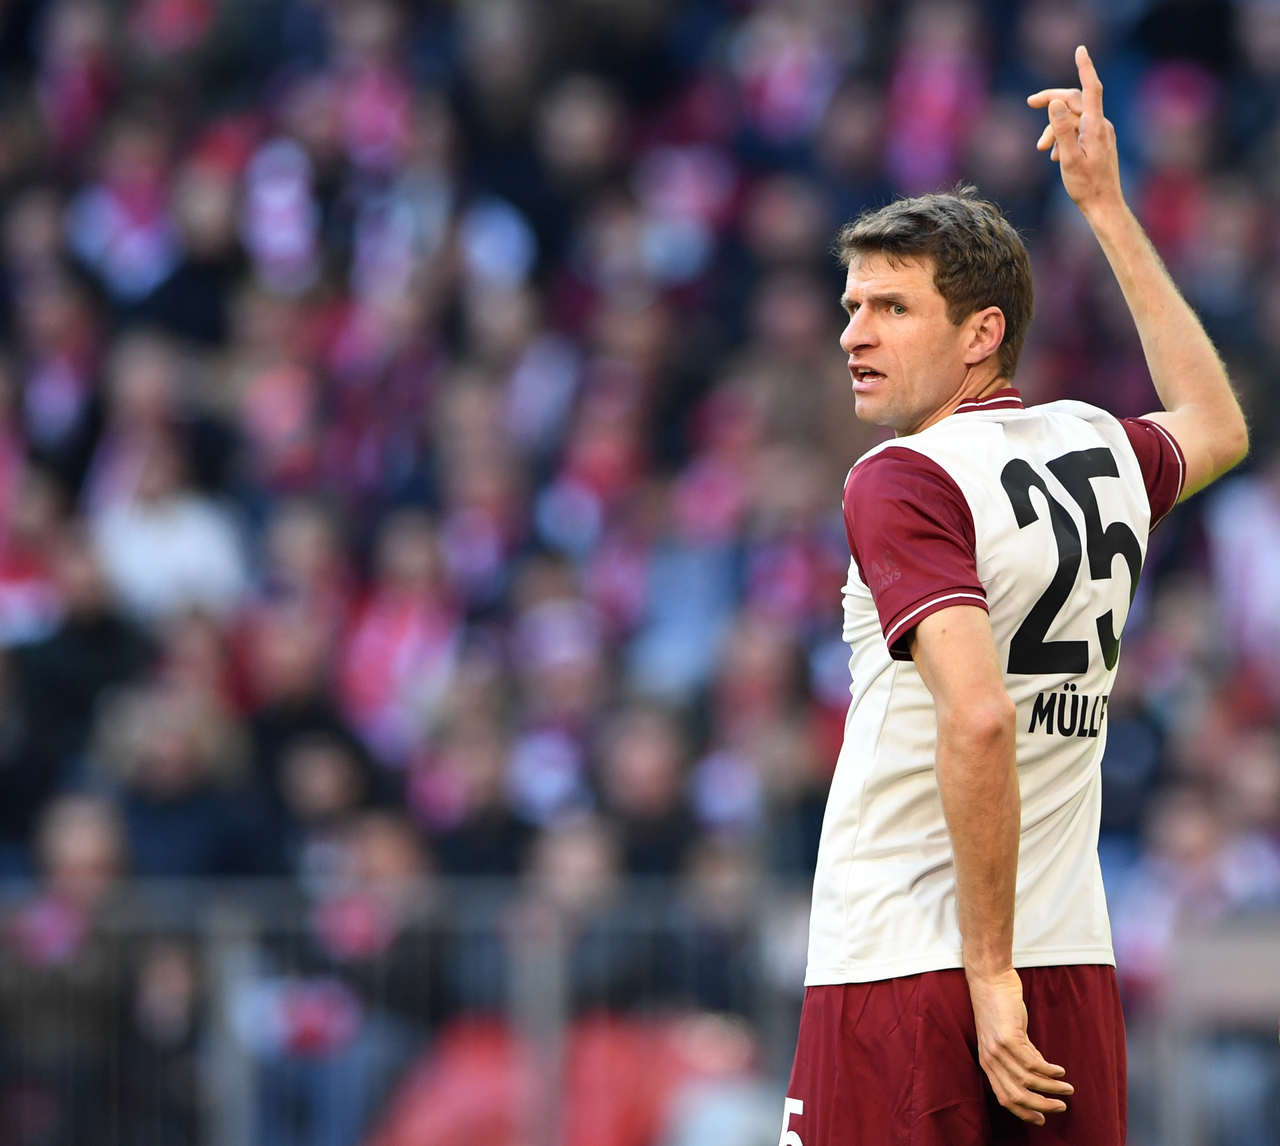 NO RADAR - Thomas Müller pode estar de saída do Bayern de Munique. O jogador alemão tem contrato com o clube até o final de 2023 e ainda não chegou a um acordo por uma renovação. Segundo o jornal ‘SportBild’, Newcastle e Everton estão interessados na contratação do atacante.